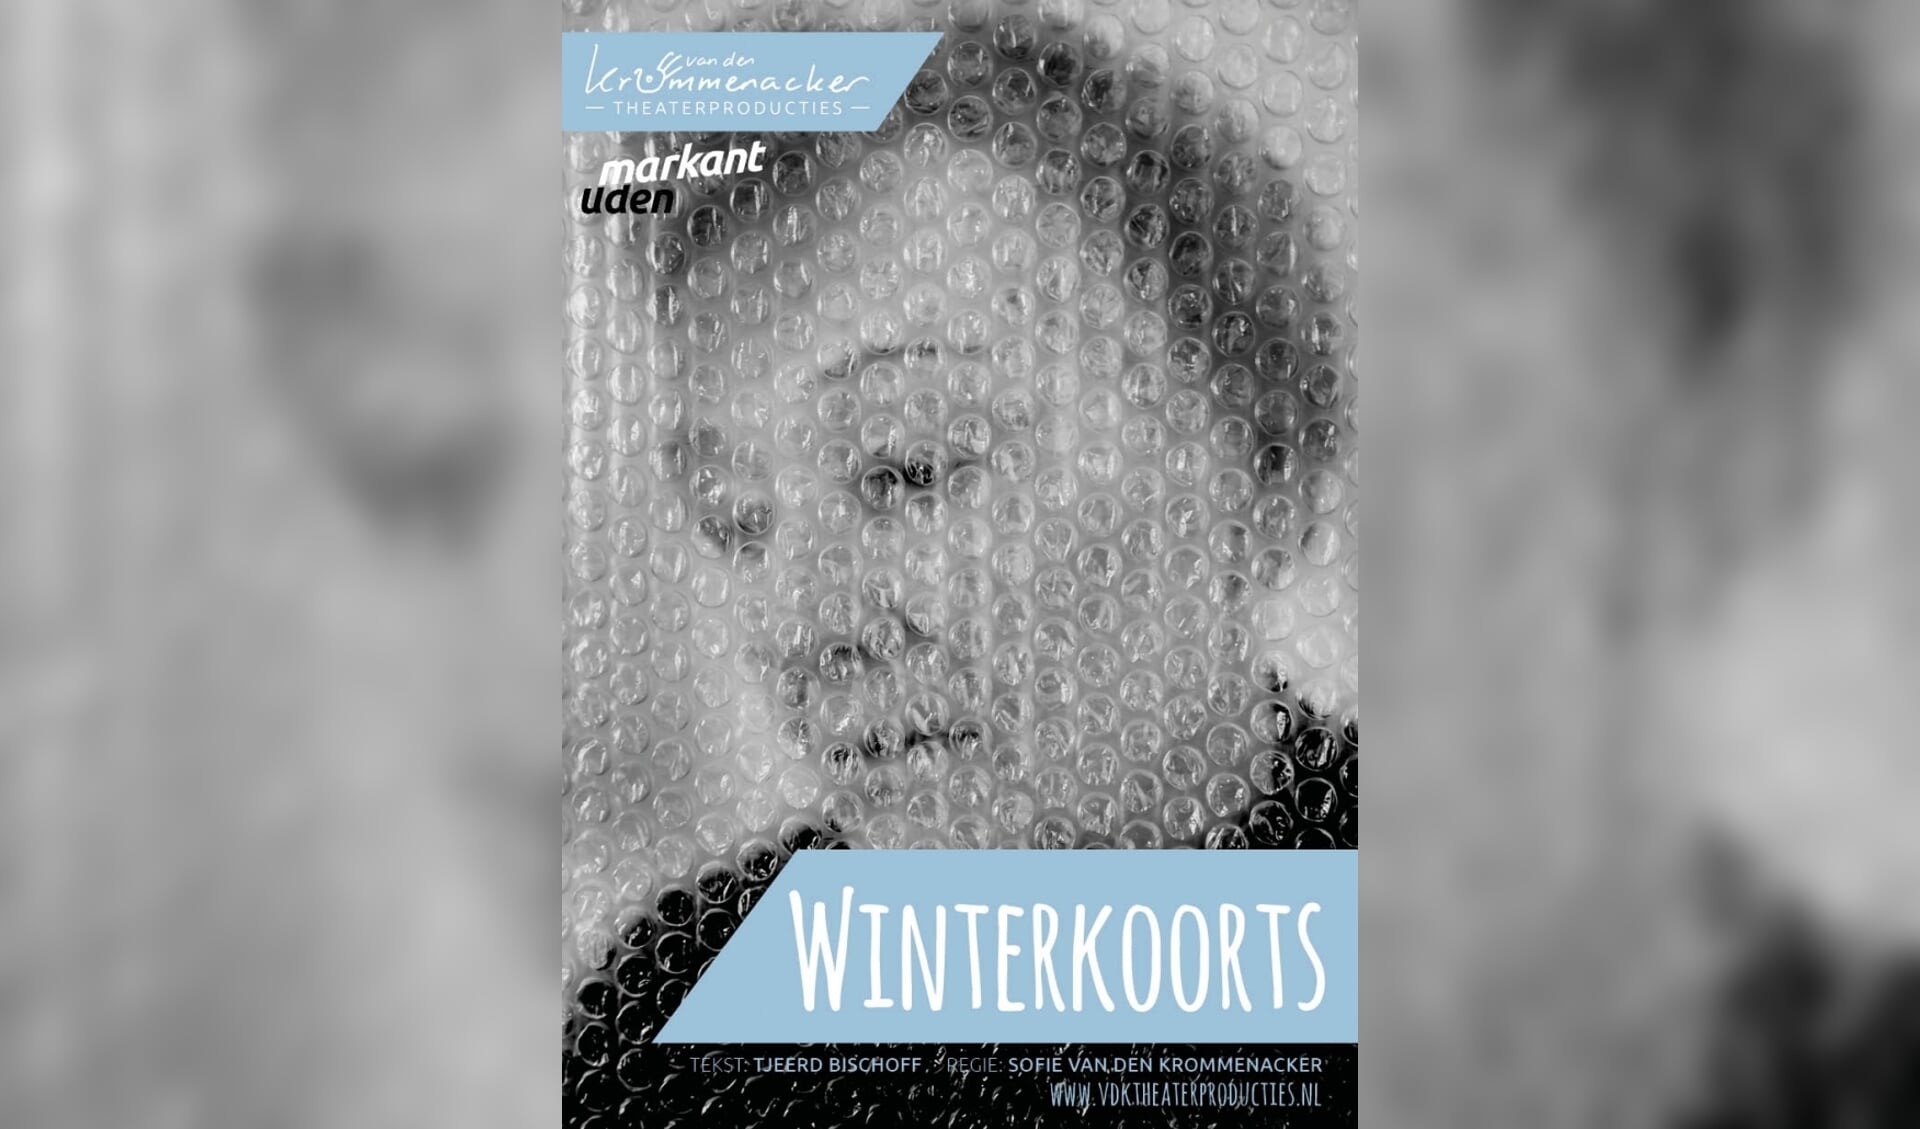 Winterkoorts is drie dagen te zien in Theater Markant